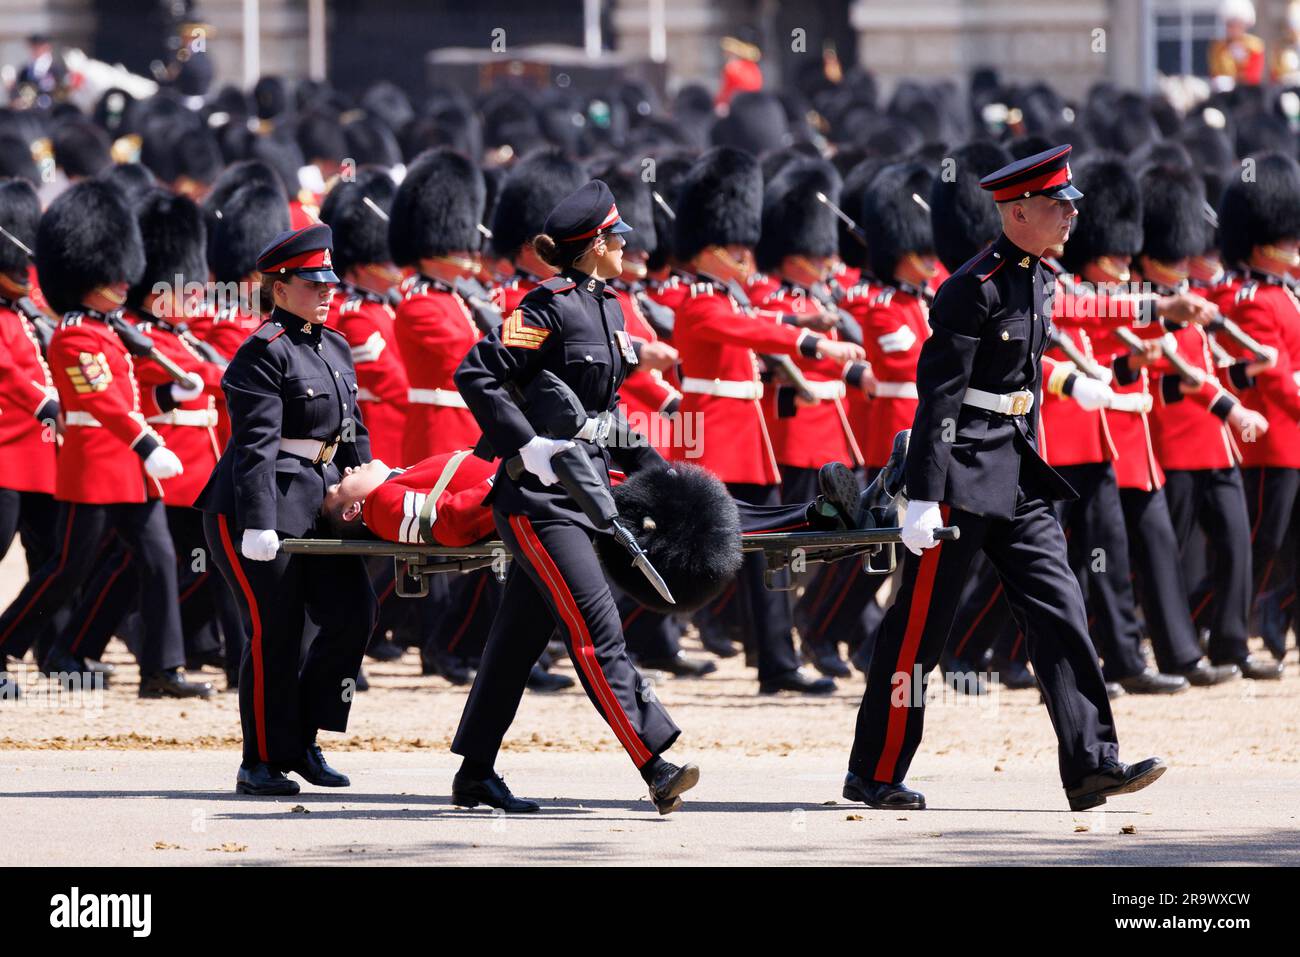 Die letzte Probe für Trooping the Colour findet heute bei Horse Guard’s Parade statt, bevor in der nächsten Woche König Charles Geburtstag gefeiert wird. Soldaten Stockfoto